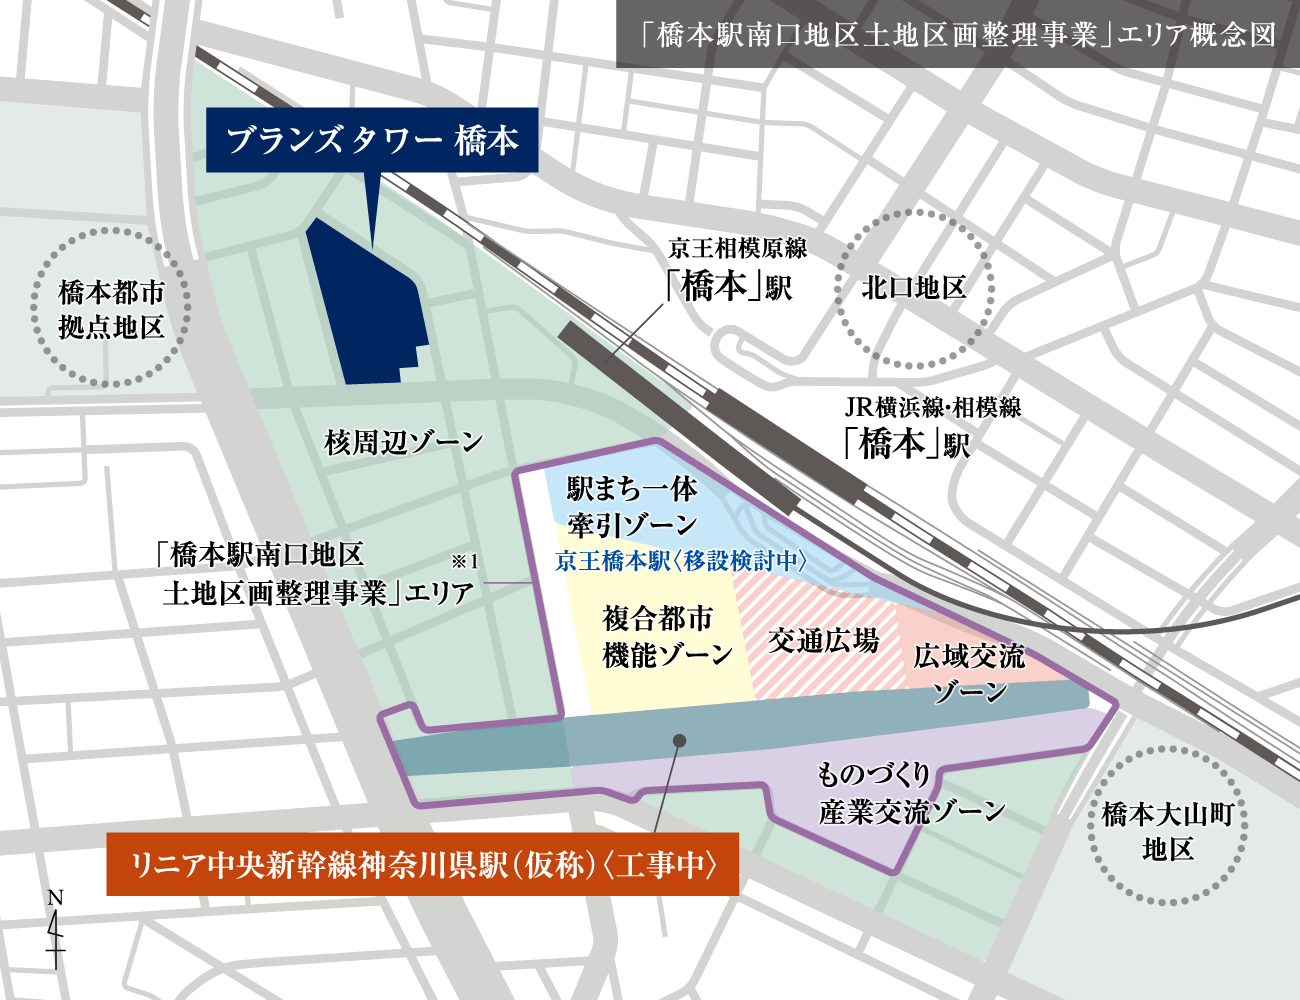 「橋本駅南口地区区画整理事業」エリア概念図